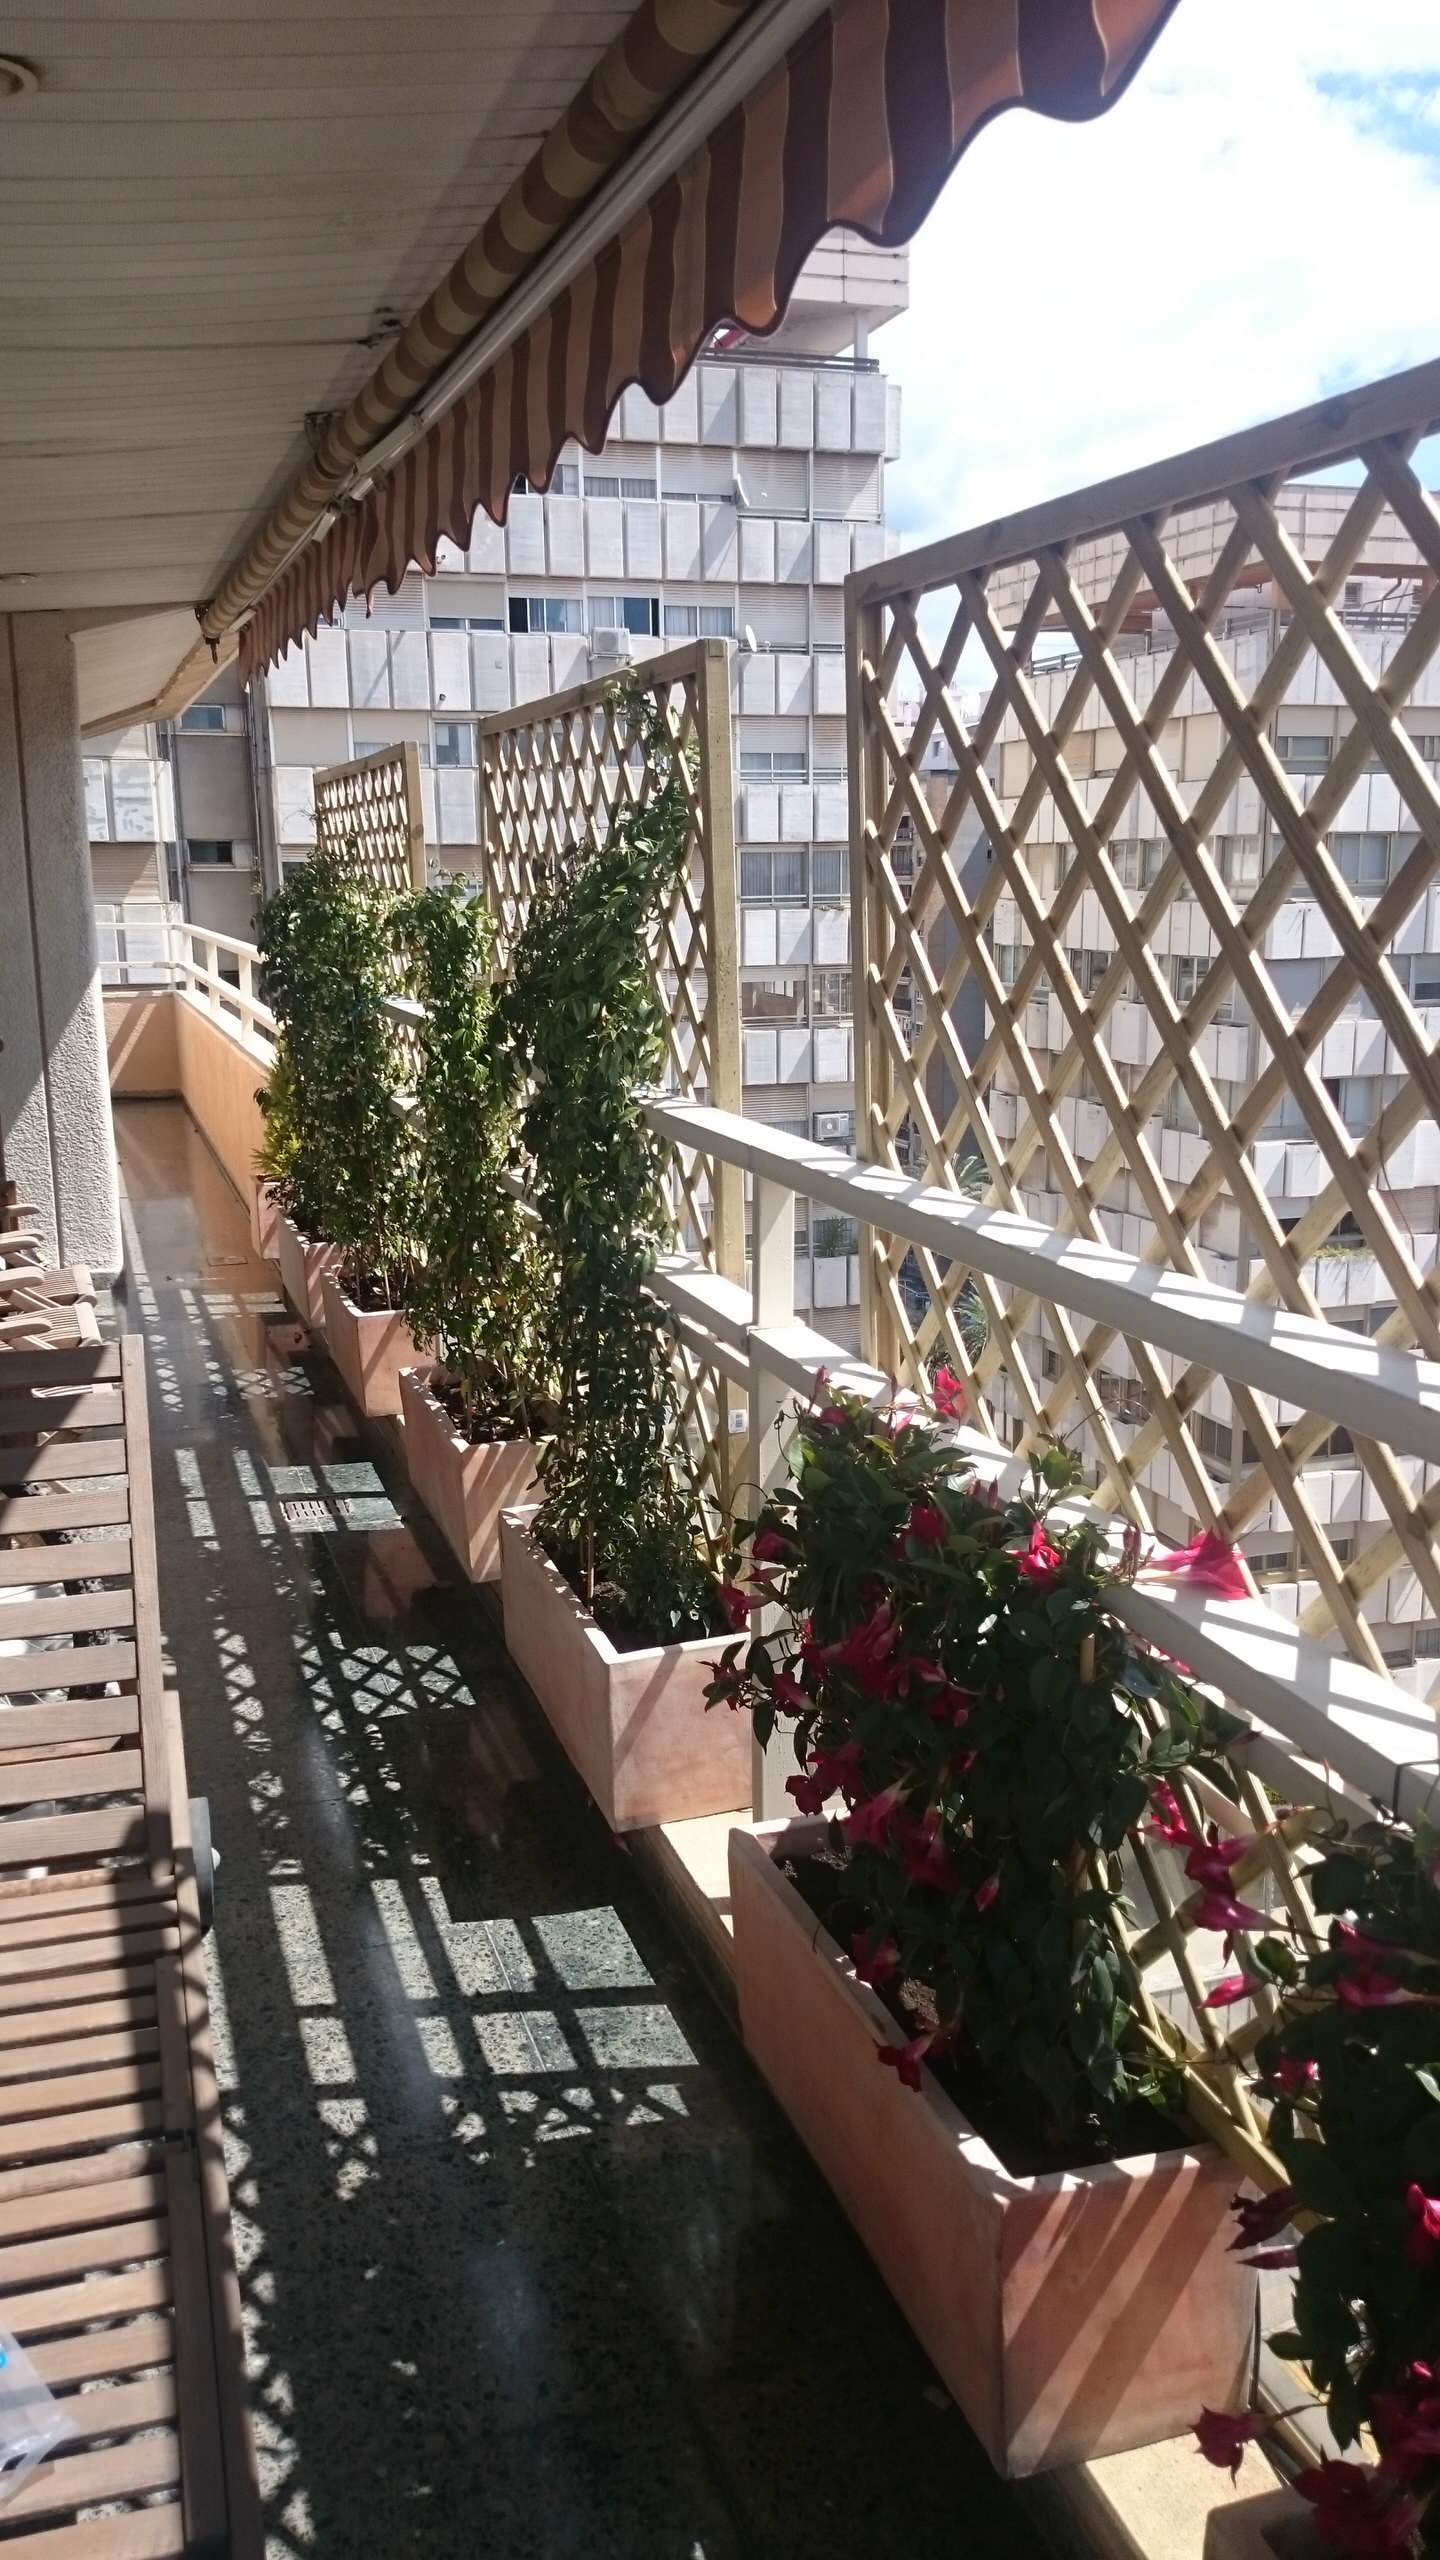 Наружная отделка балконов и лоджий – популярные технологии и материалы